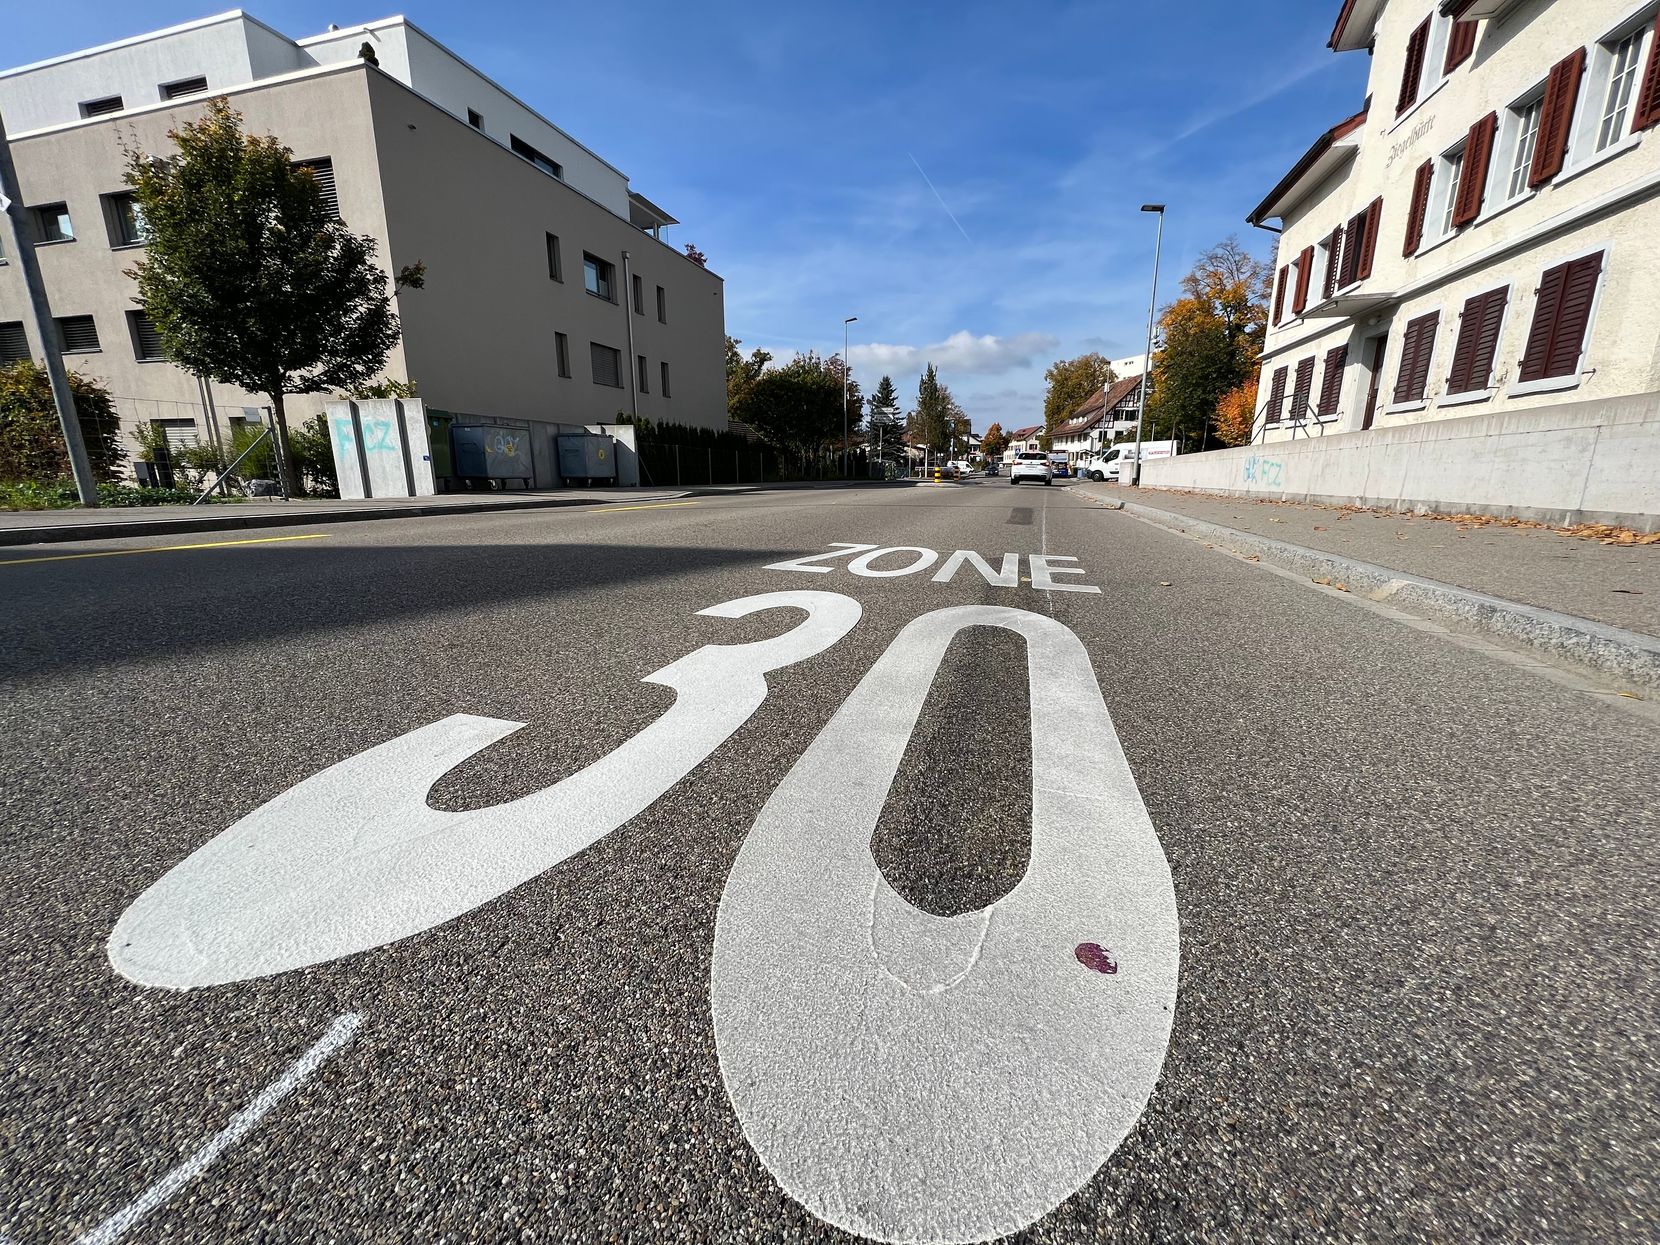 Auf dem Foto sieht man eine grosse Zahl 30 auf der Strasse, die die Tempo-30-Zone signalisiert.